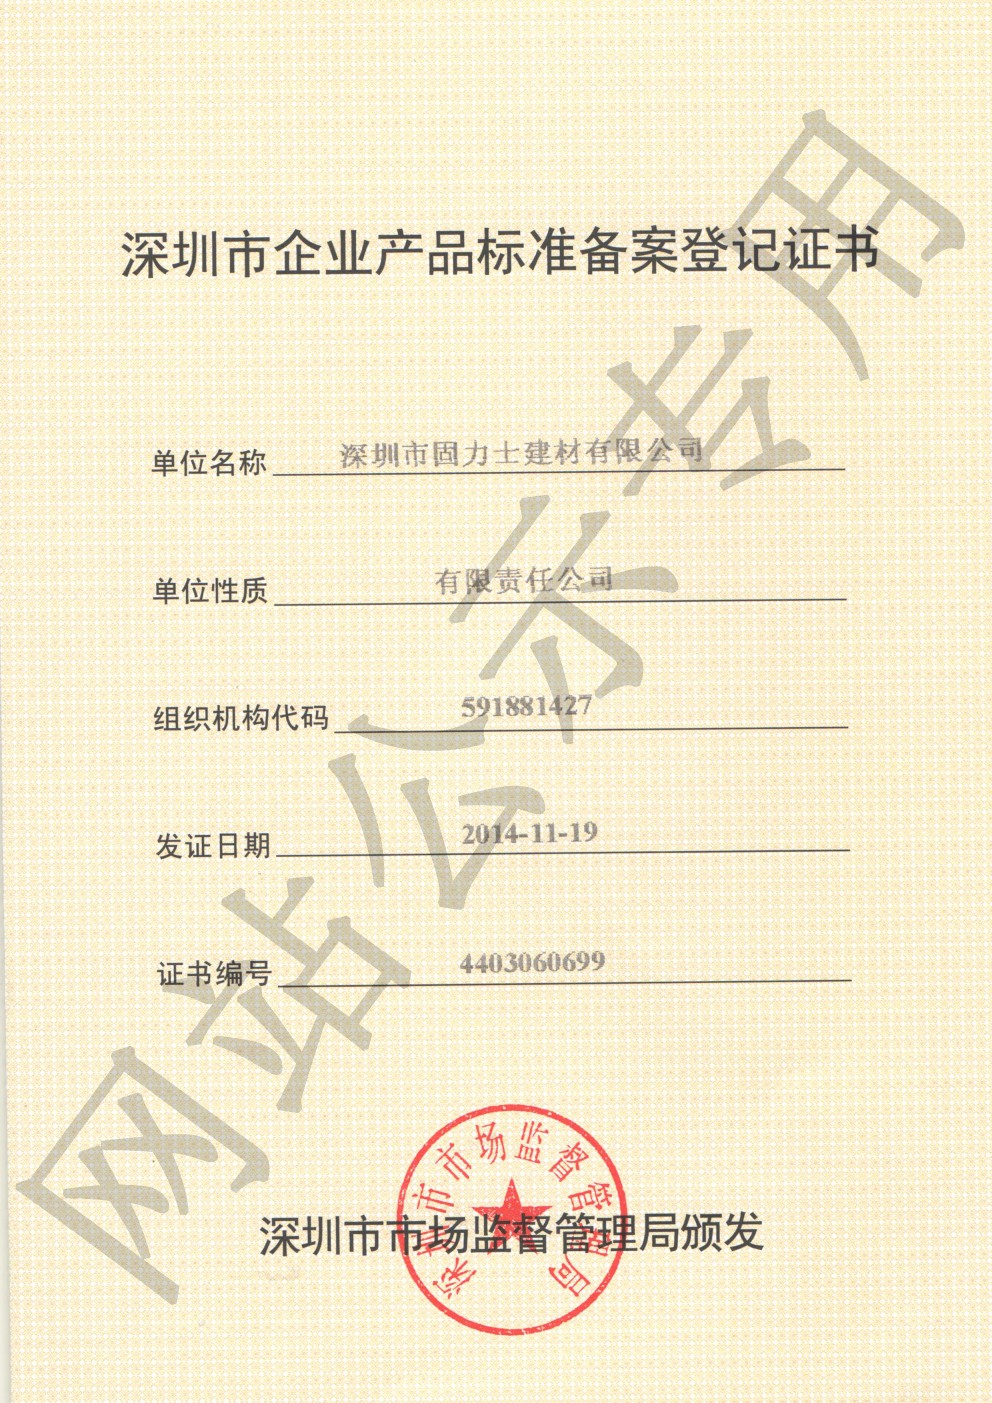 仓山企业产品标准登记证书